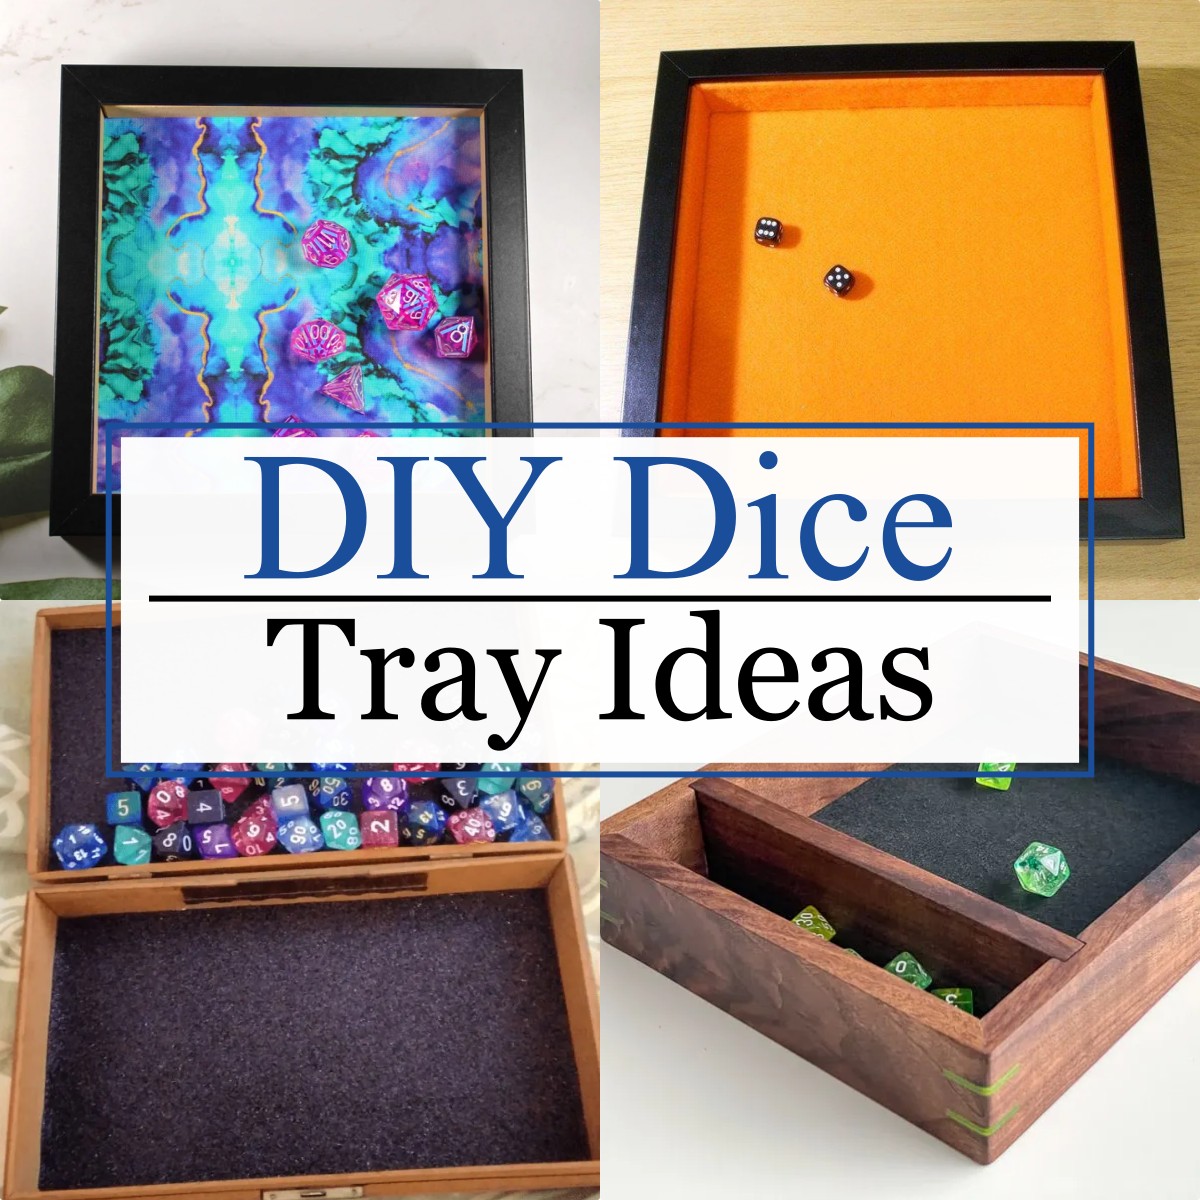 DIY Dice Tray Ideas